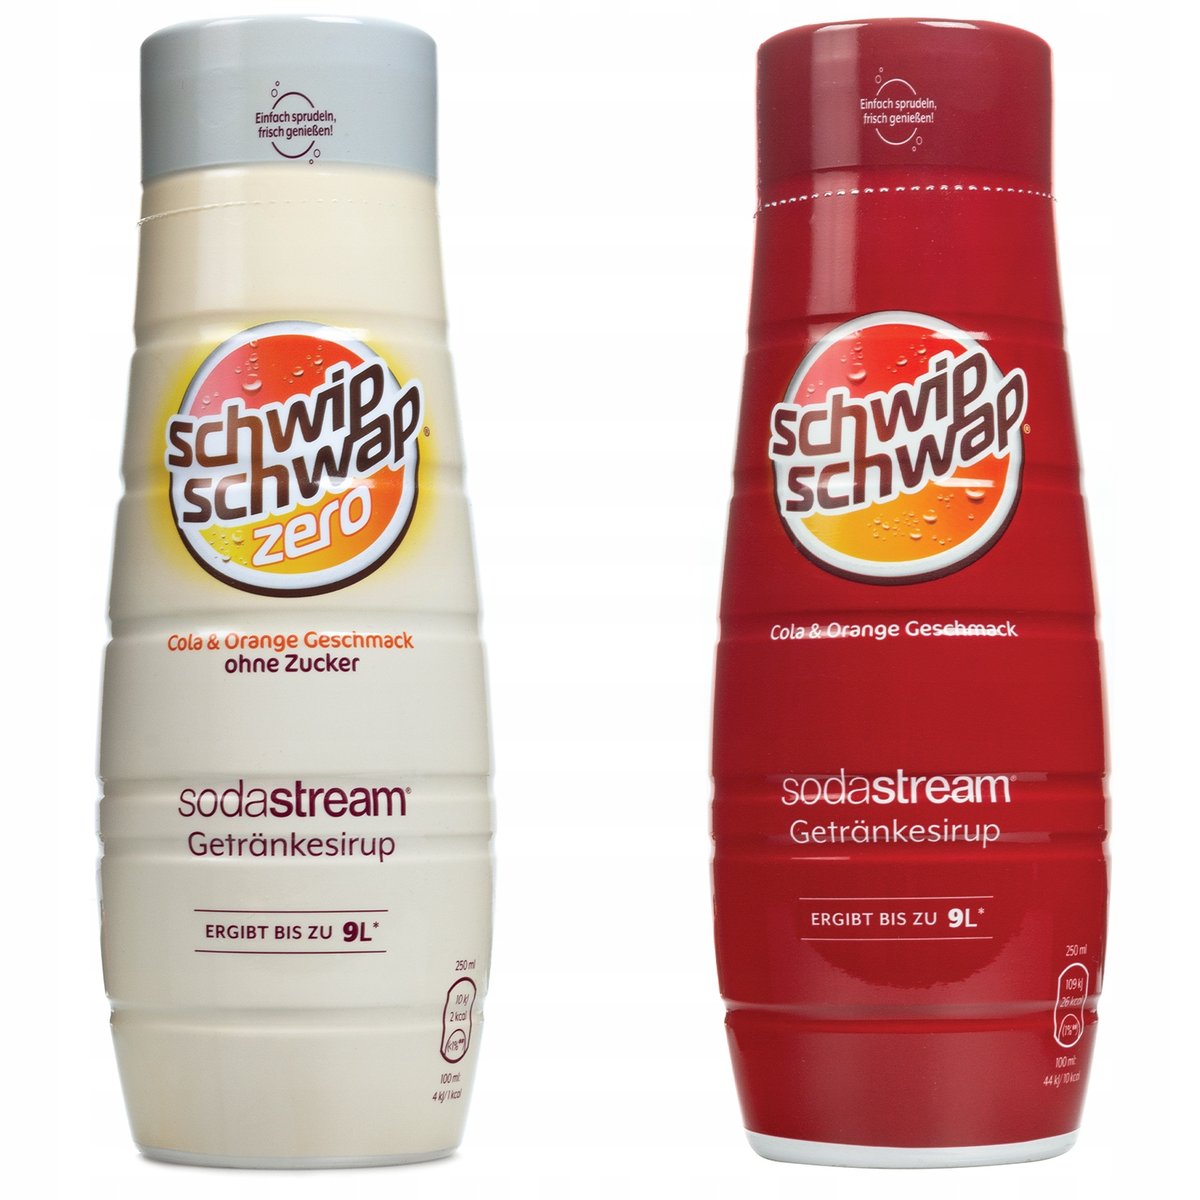 2x Syrop Sodastream Schwip Schwap Cola Orange Zero